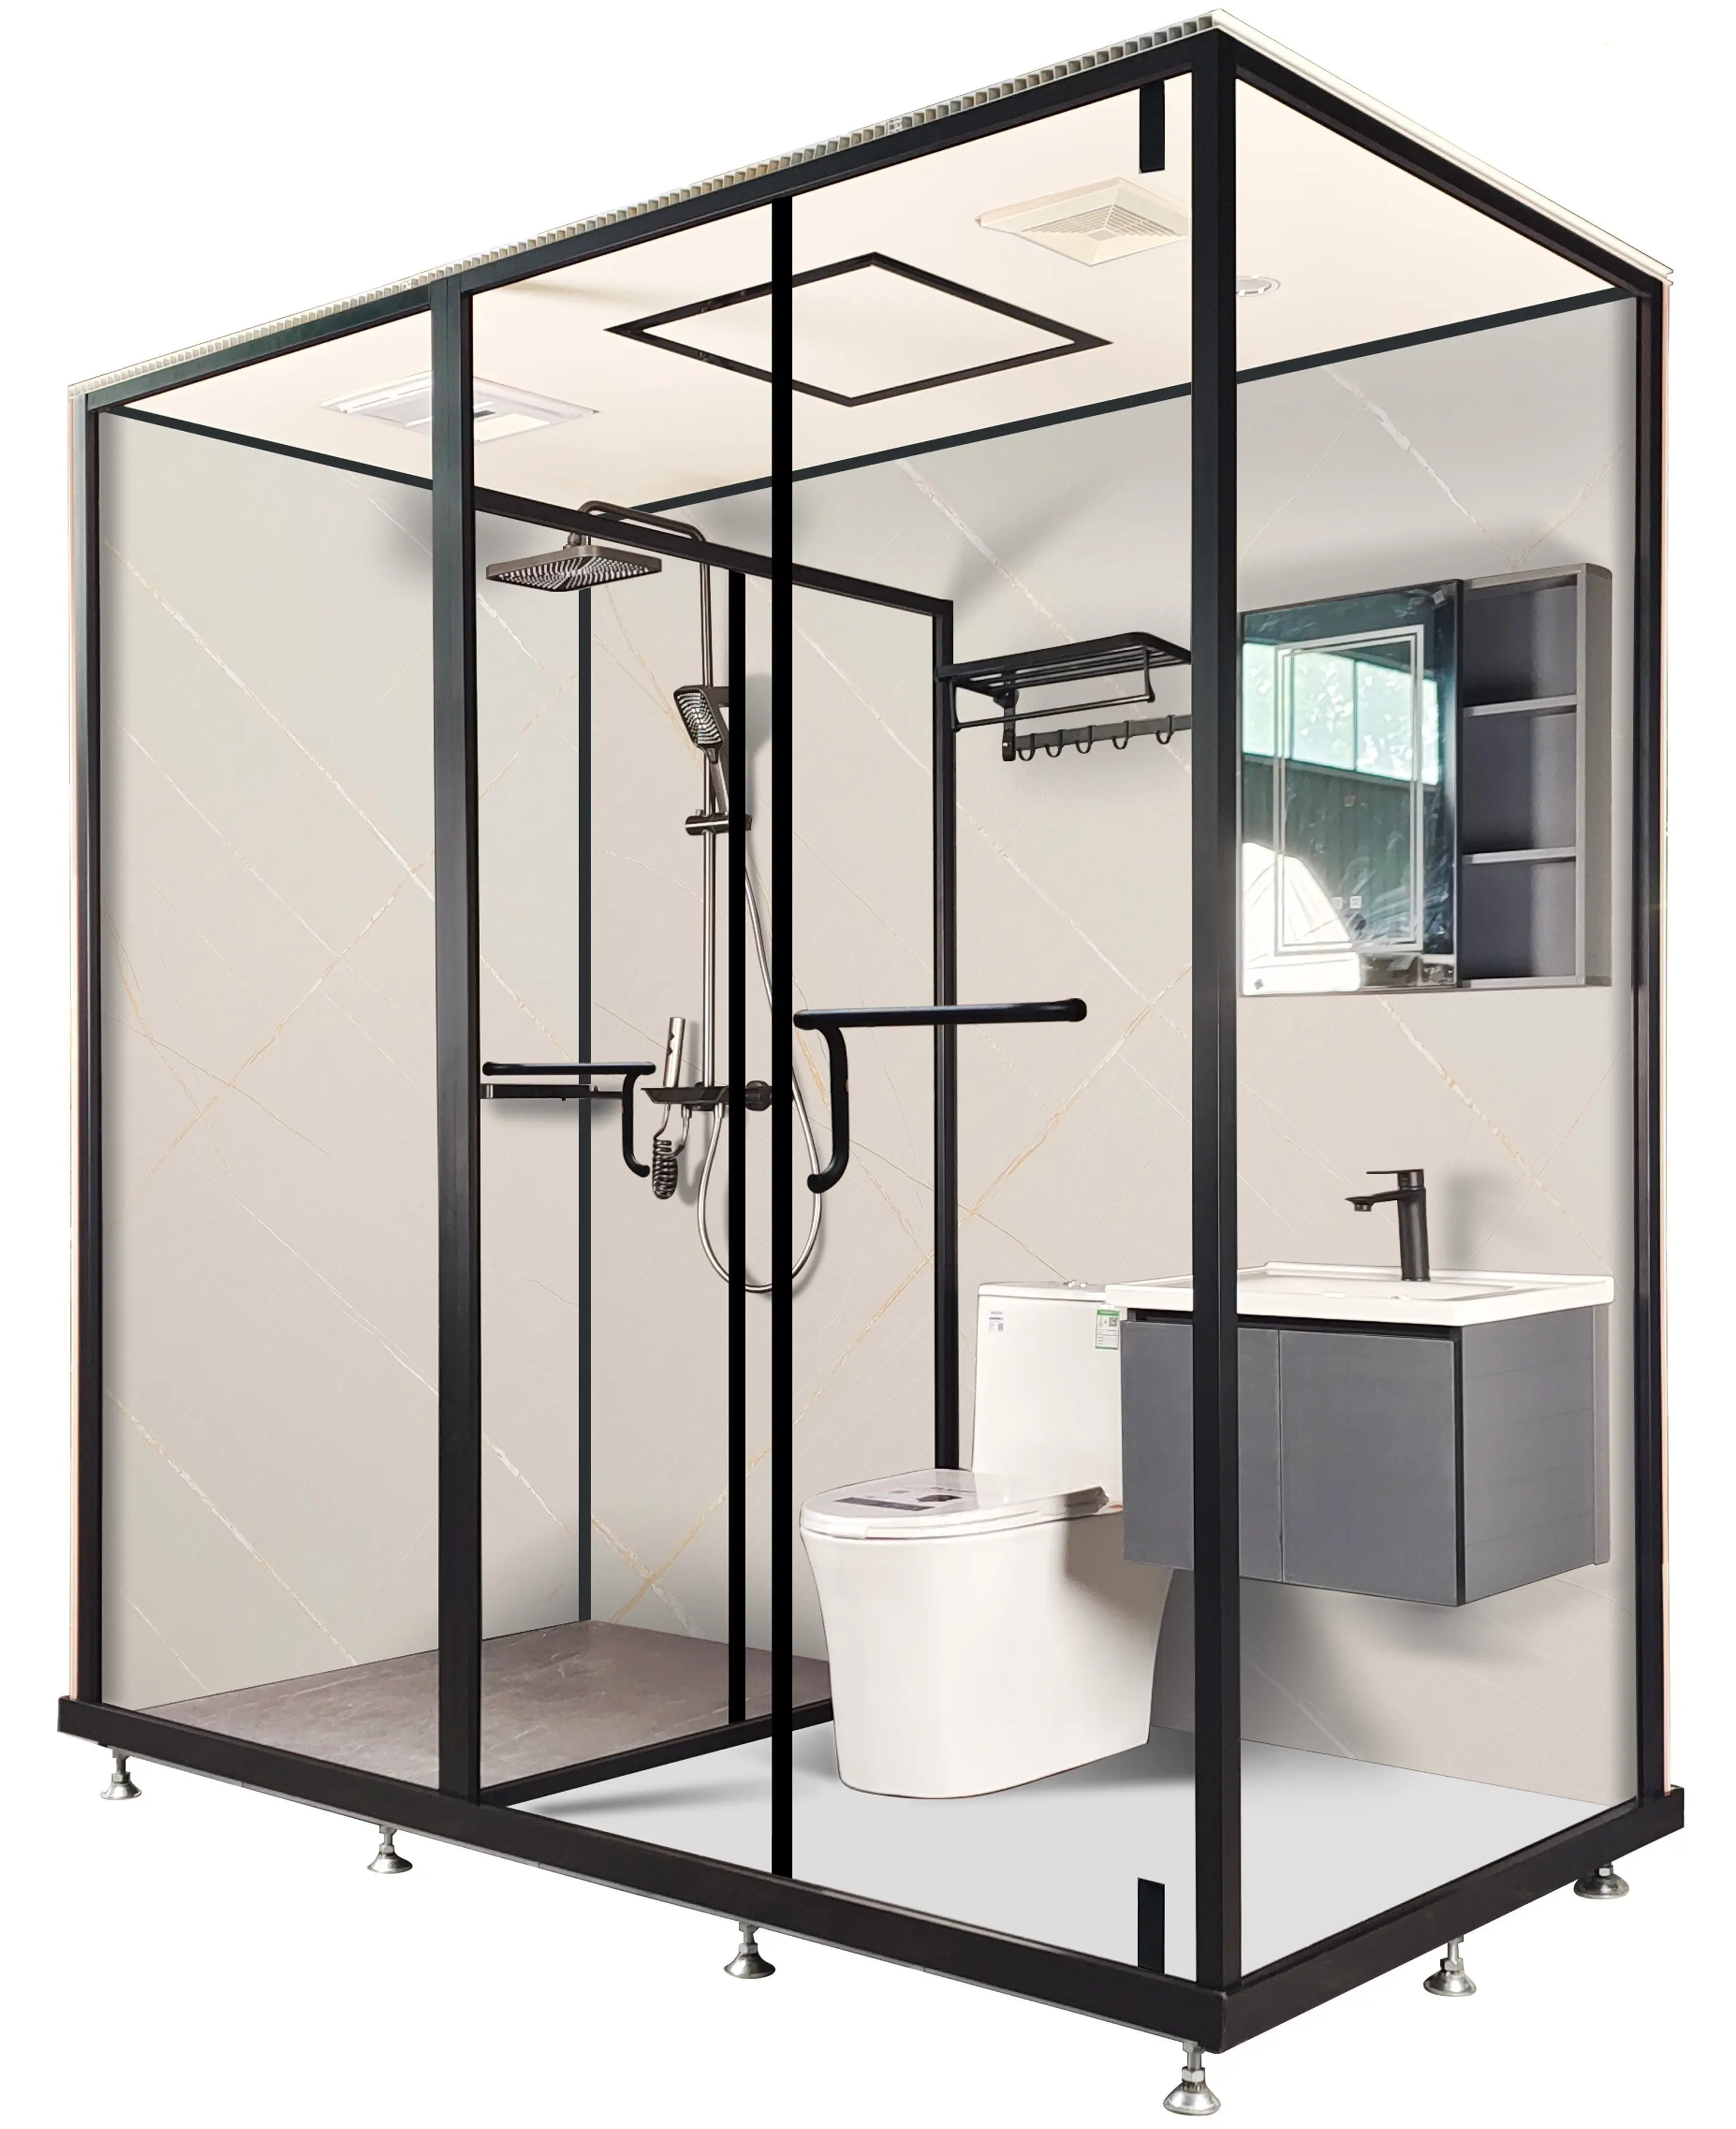 Vaina de baño prefabricada de gama alta Vaina de baño integrada Unidad de cuarto de ducha modular Baño de lujo